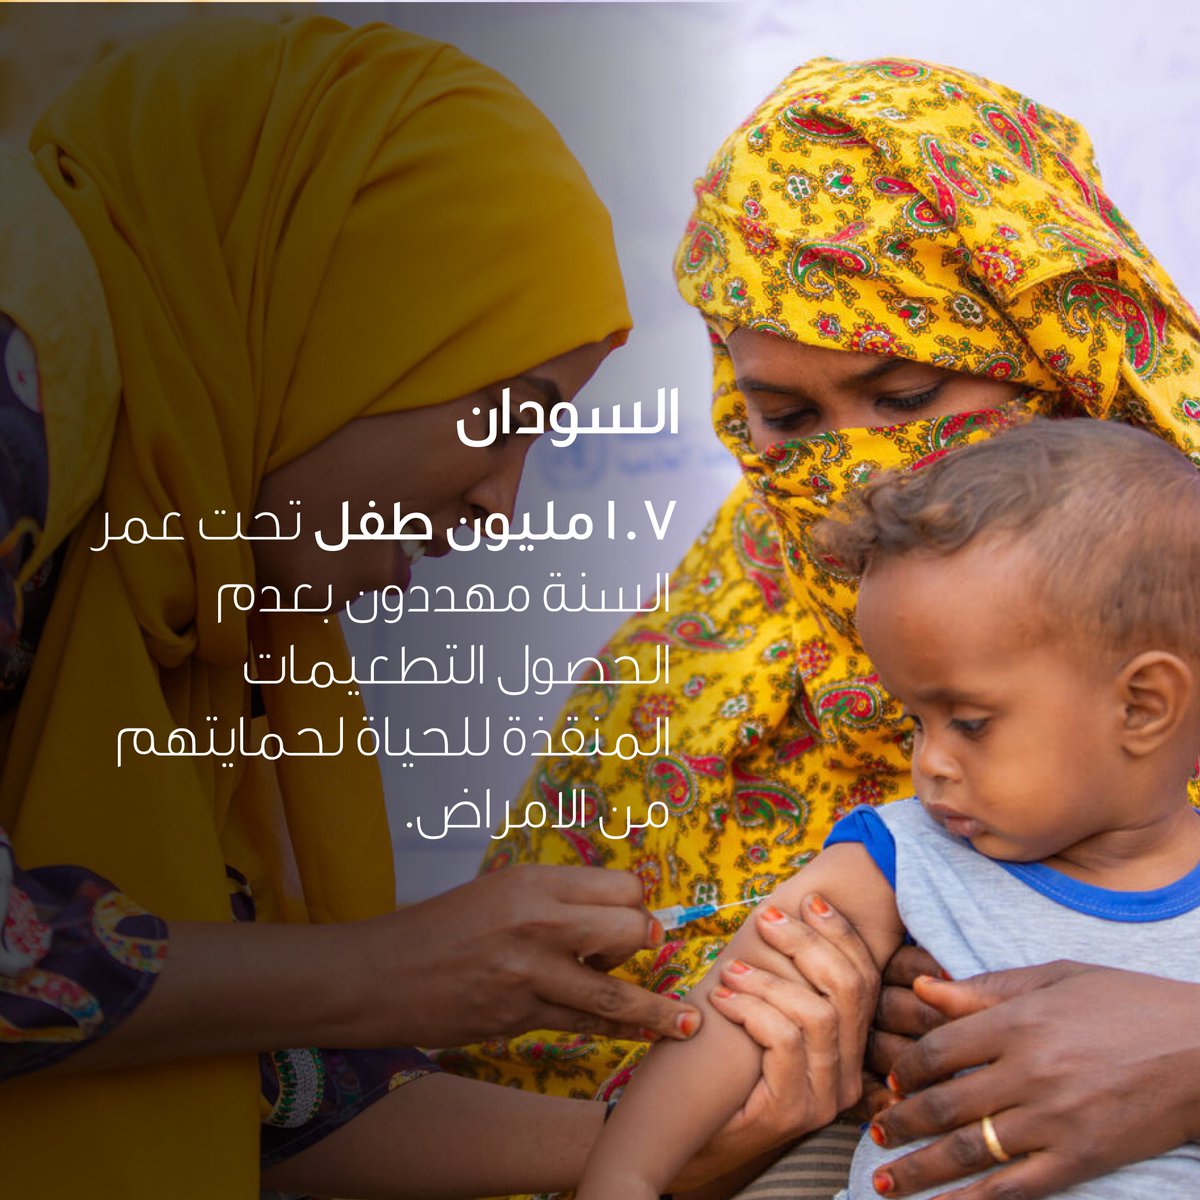 انخفضت نسبة تطعيم الأطفال، بسبب الحرب المستمرة في #السودان، مما يعرض الأطفال للأمراض التي تهدد حياتهم مثل فيروس شلل الأطفال والحصبة. 

لا يمكننا أن نسمح لهذا أن يستمر. الآن هو الوقت المناسب للعمل من أجل #كل_طفل في السودان. 

#الطفل_هو_طفل
#مع_السودان